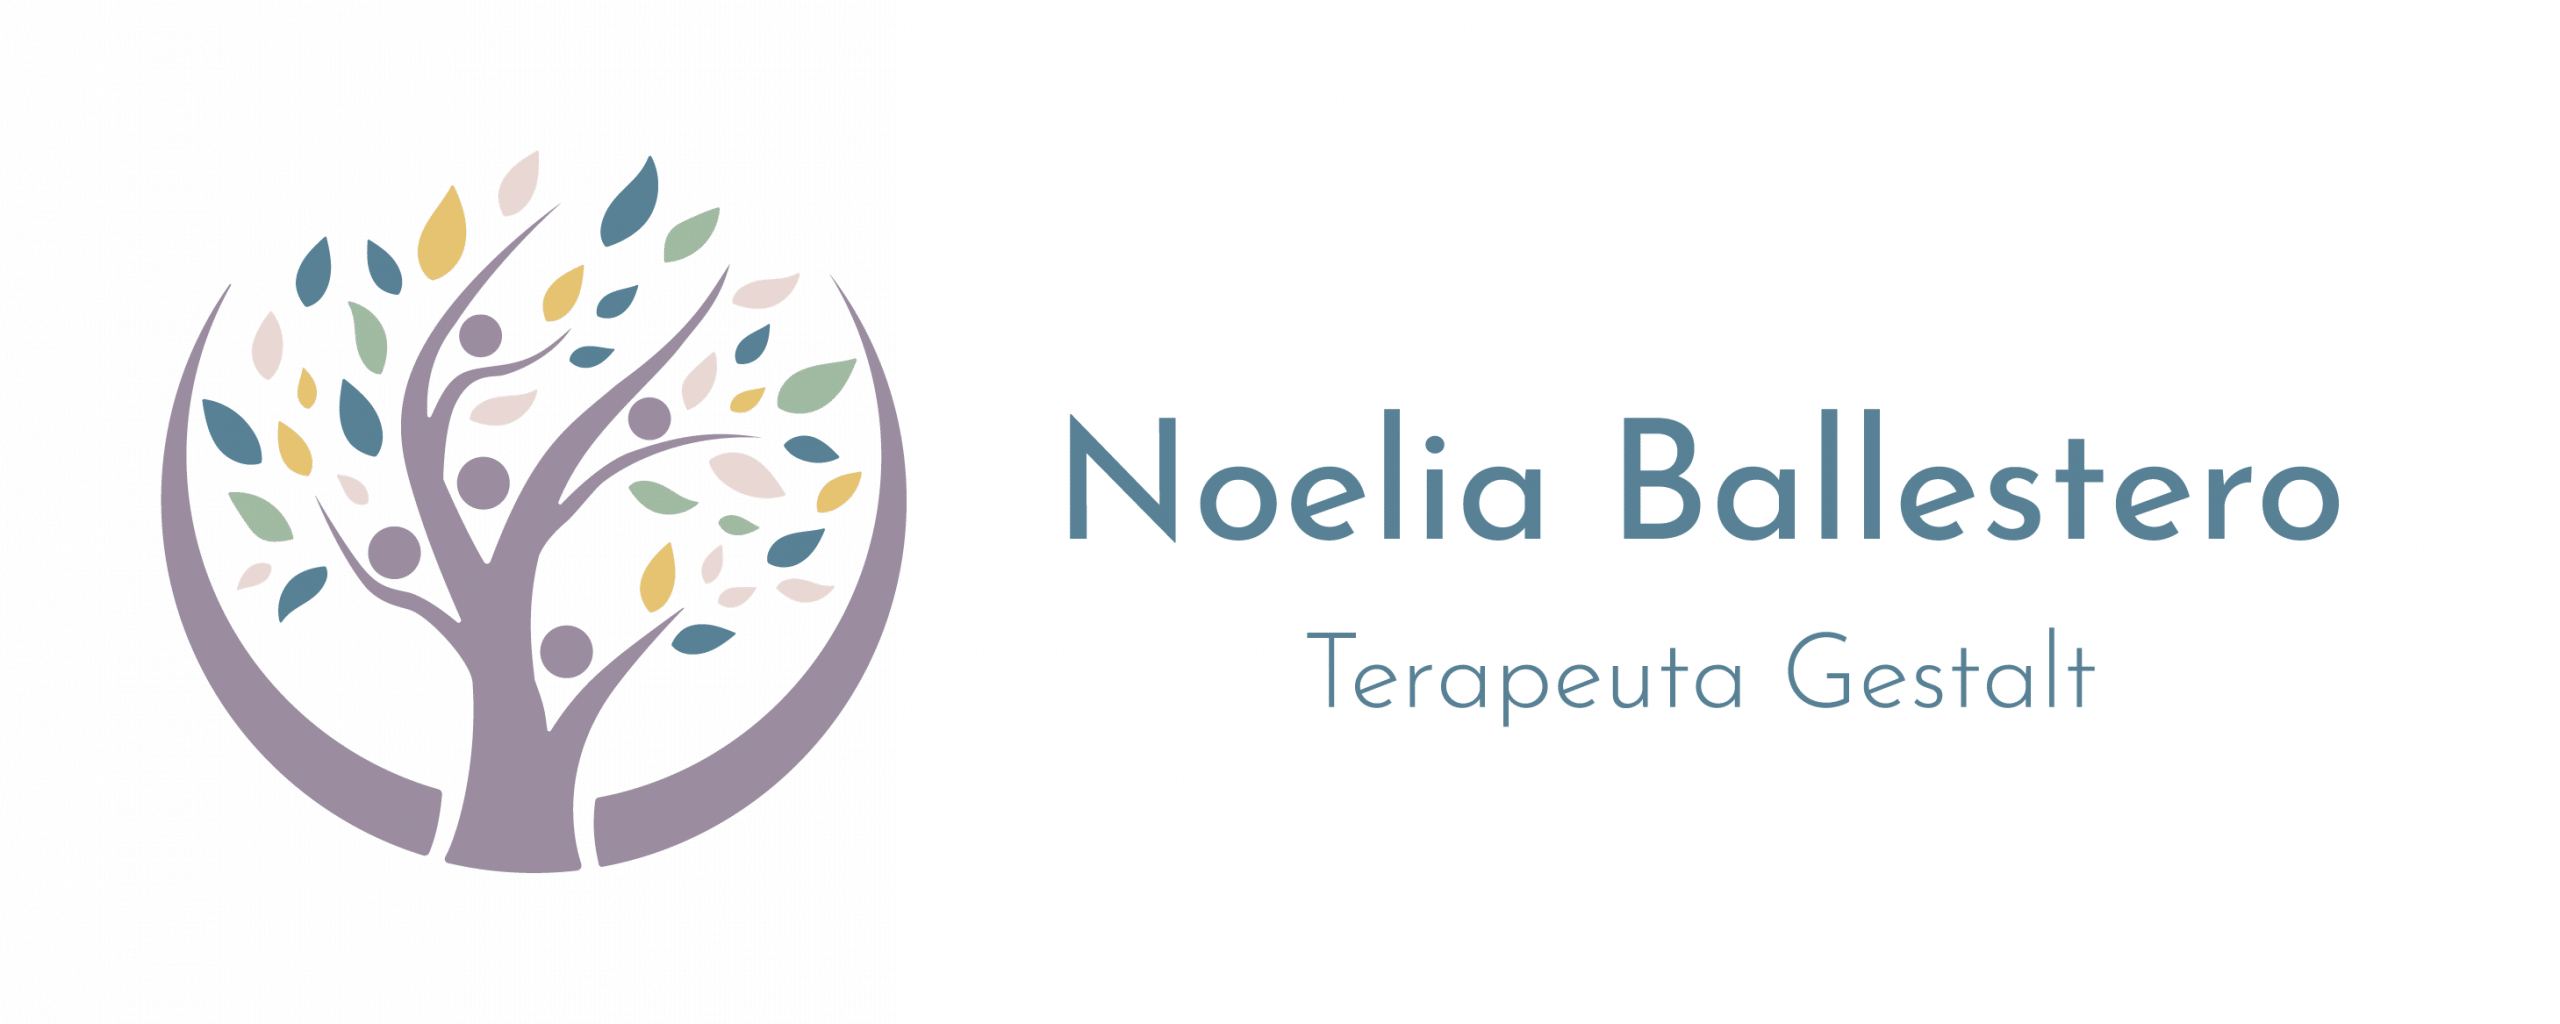 Logotipo Noelia Ballestero